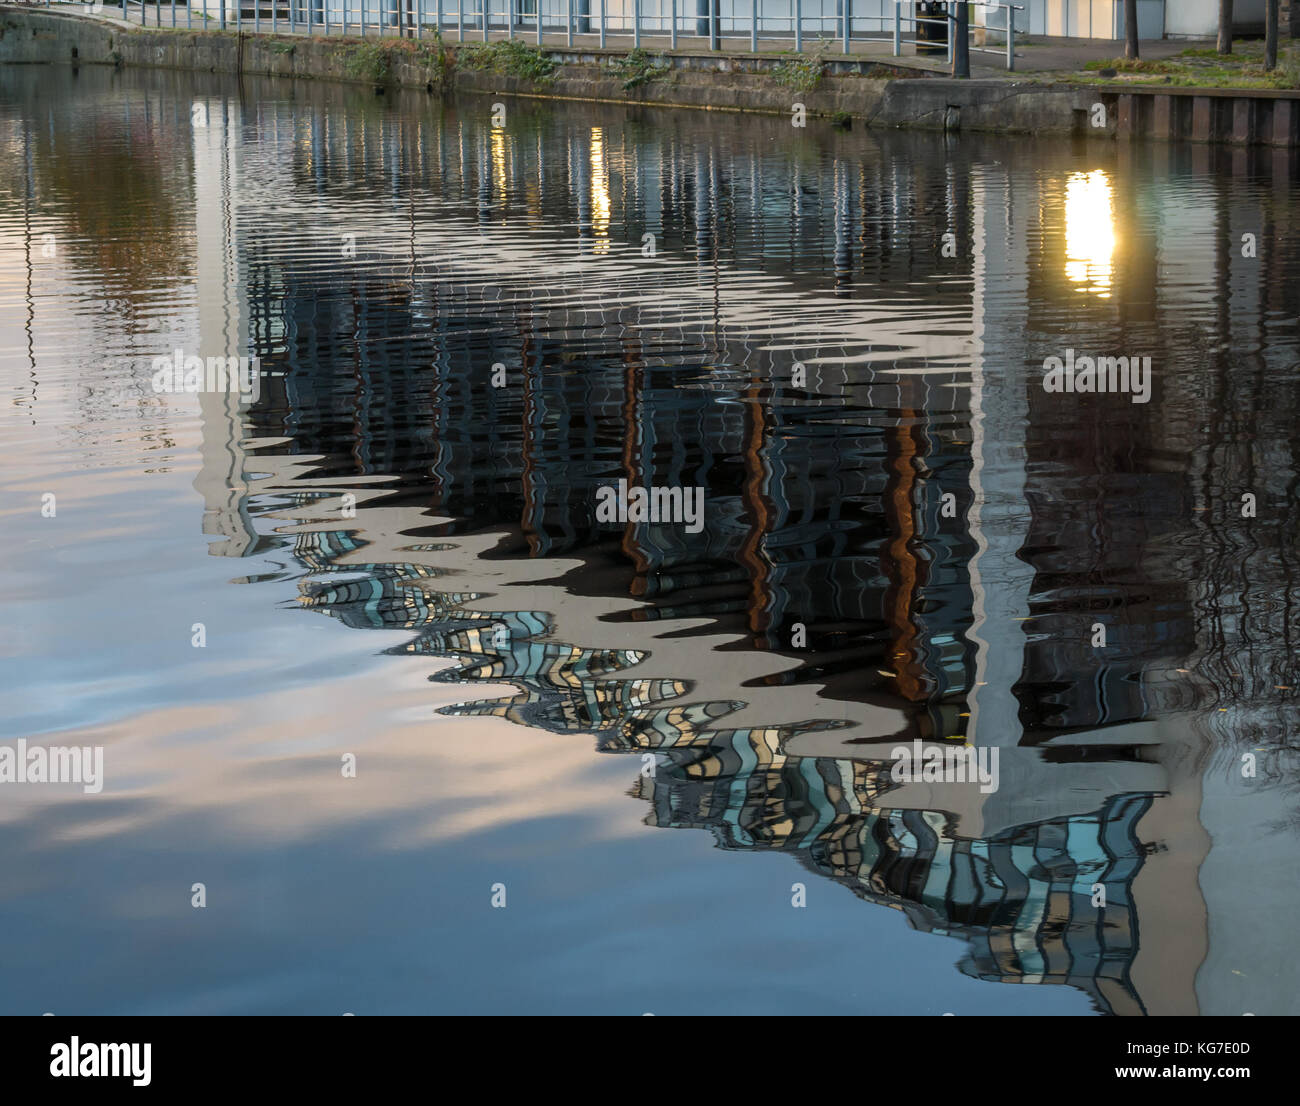 Reflexionen der modernen Mehrfamilienhaus in ruhigem Wasser Wasser von Leith Fluss, Erstellen von Welligen abstrakte Muster, Edinburgh, Schottland, Großbritannien Stockfoto